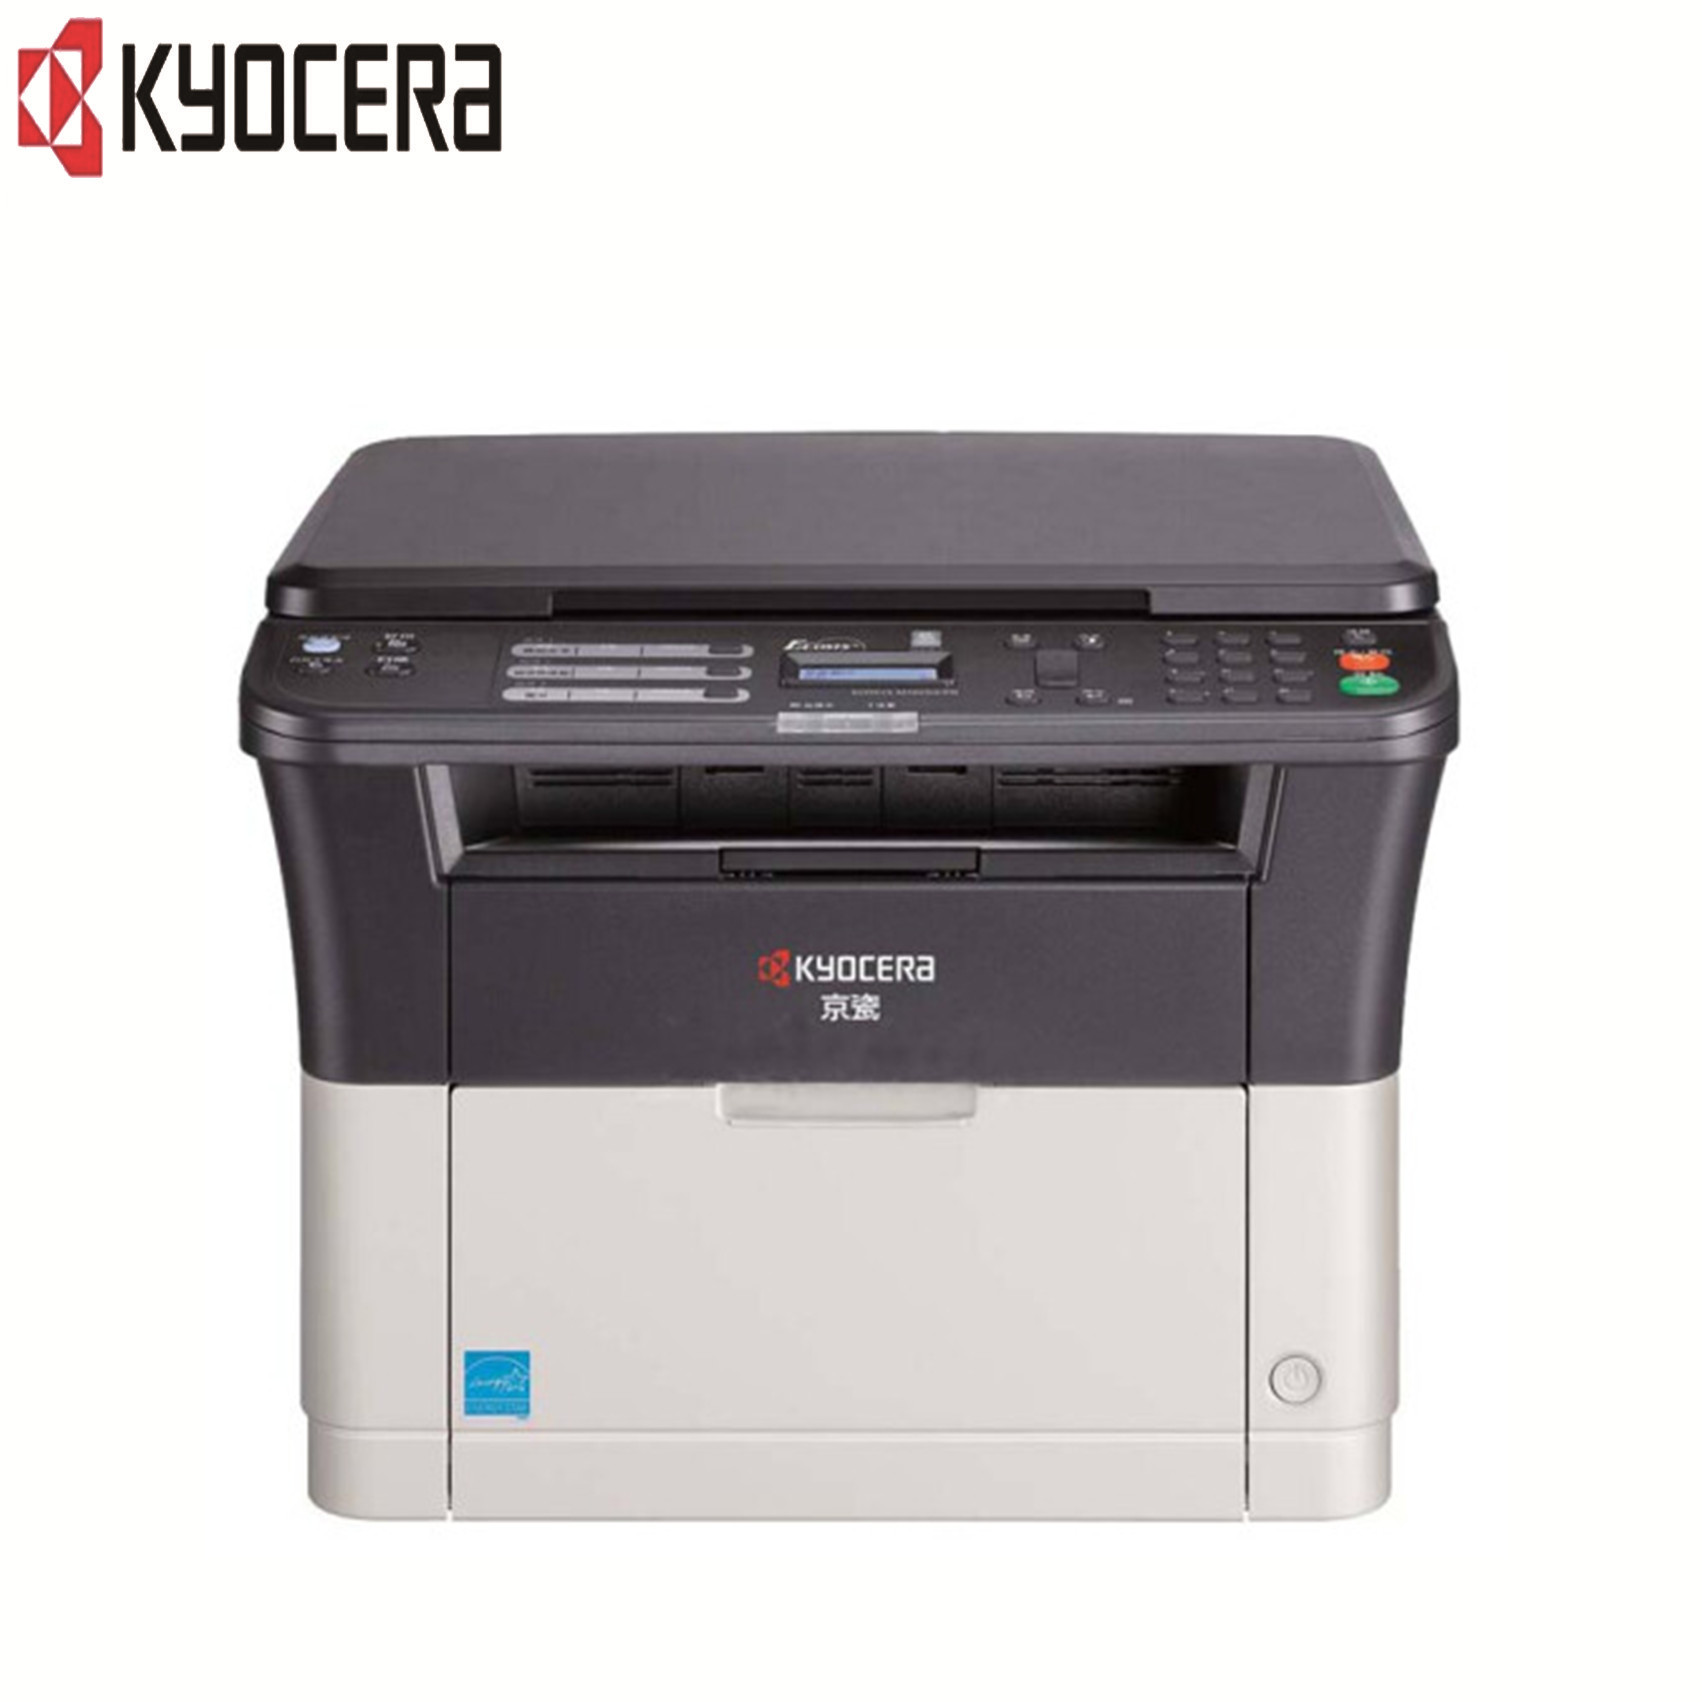 京瓷(KYOCERA)M1025d/PN黑白激光多功能一体机 打印/复印/扫描